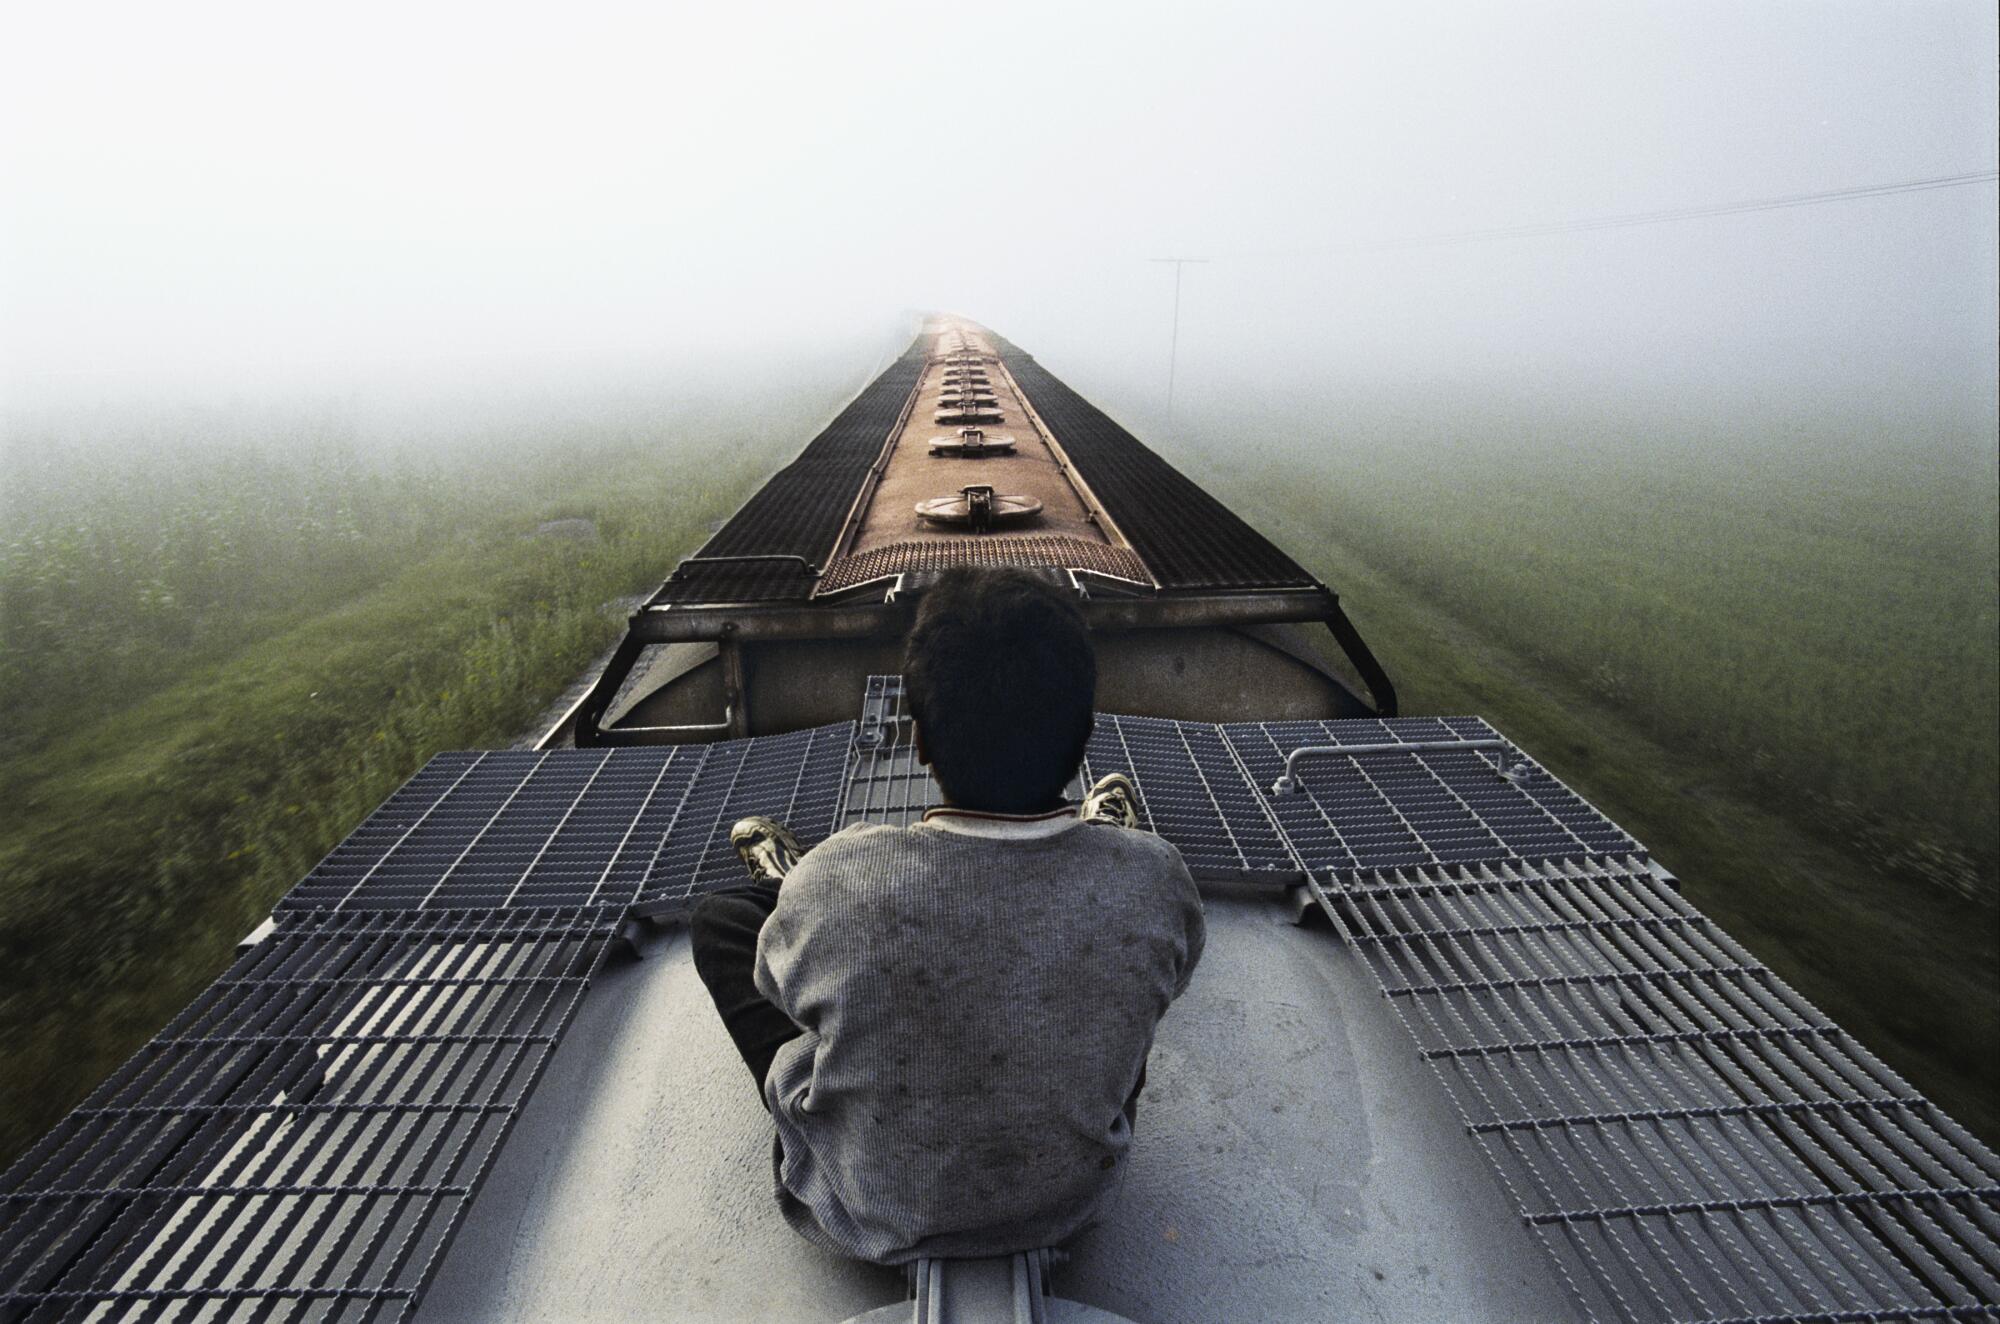 A Honduran boy rides atop a freight train